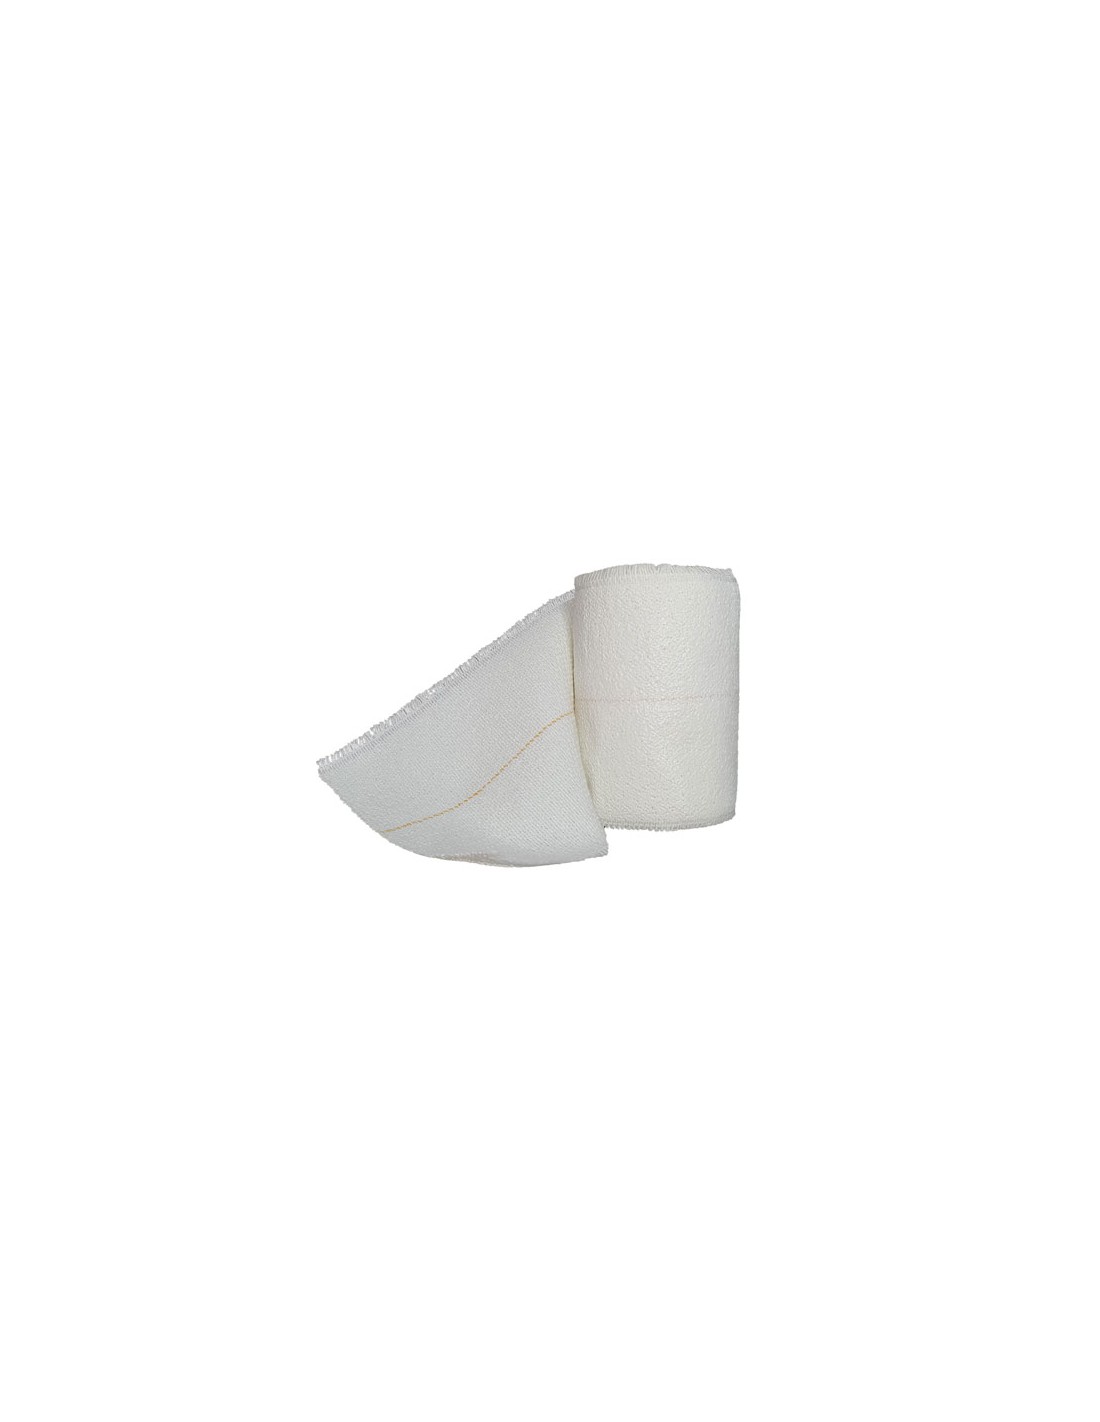 Superplast Caja 30uds 8 cm - Venda Elástica Adhesiva